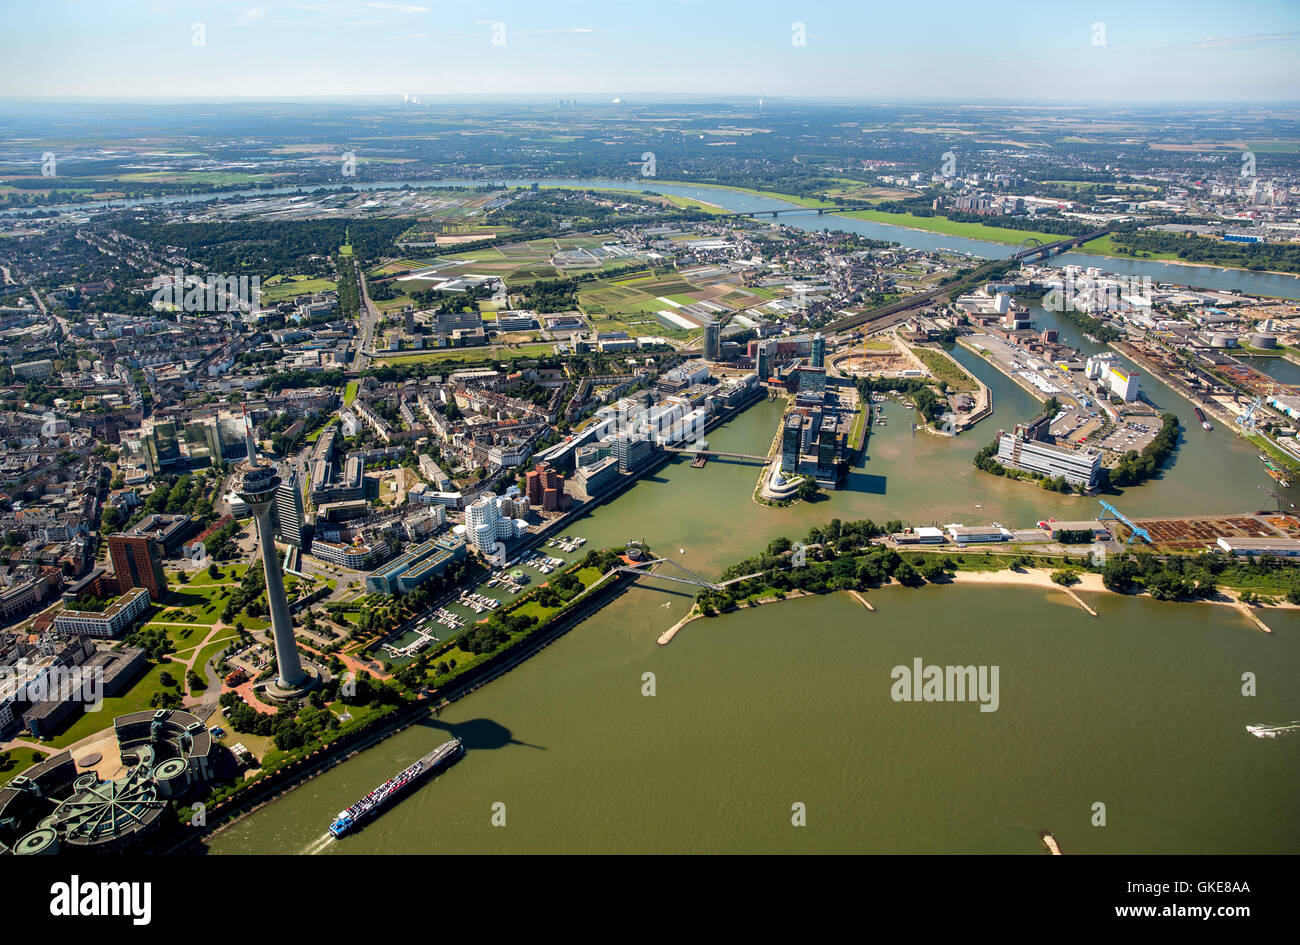 Luftbild, Fernsehturm, Parlament, GEHRY-Bauten, Medienhafen, Düsseldorf, Rheinland, Nordrhein-Westfalen, Deutschland Stockfoto